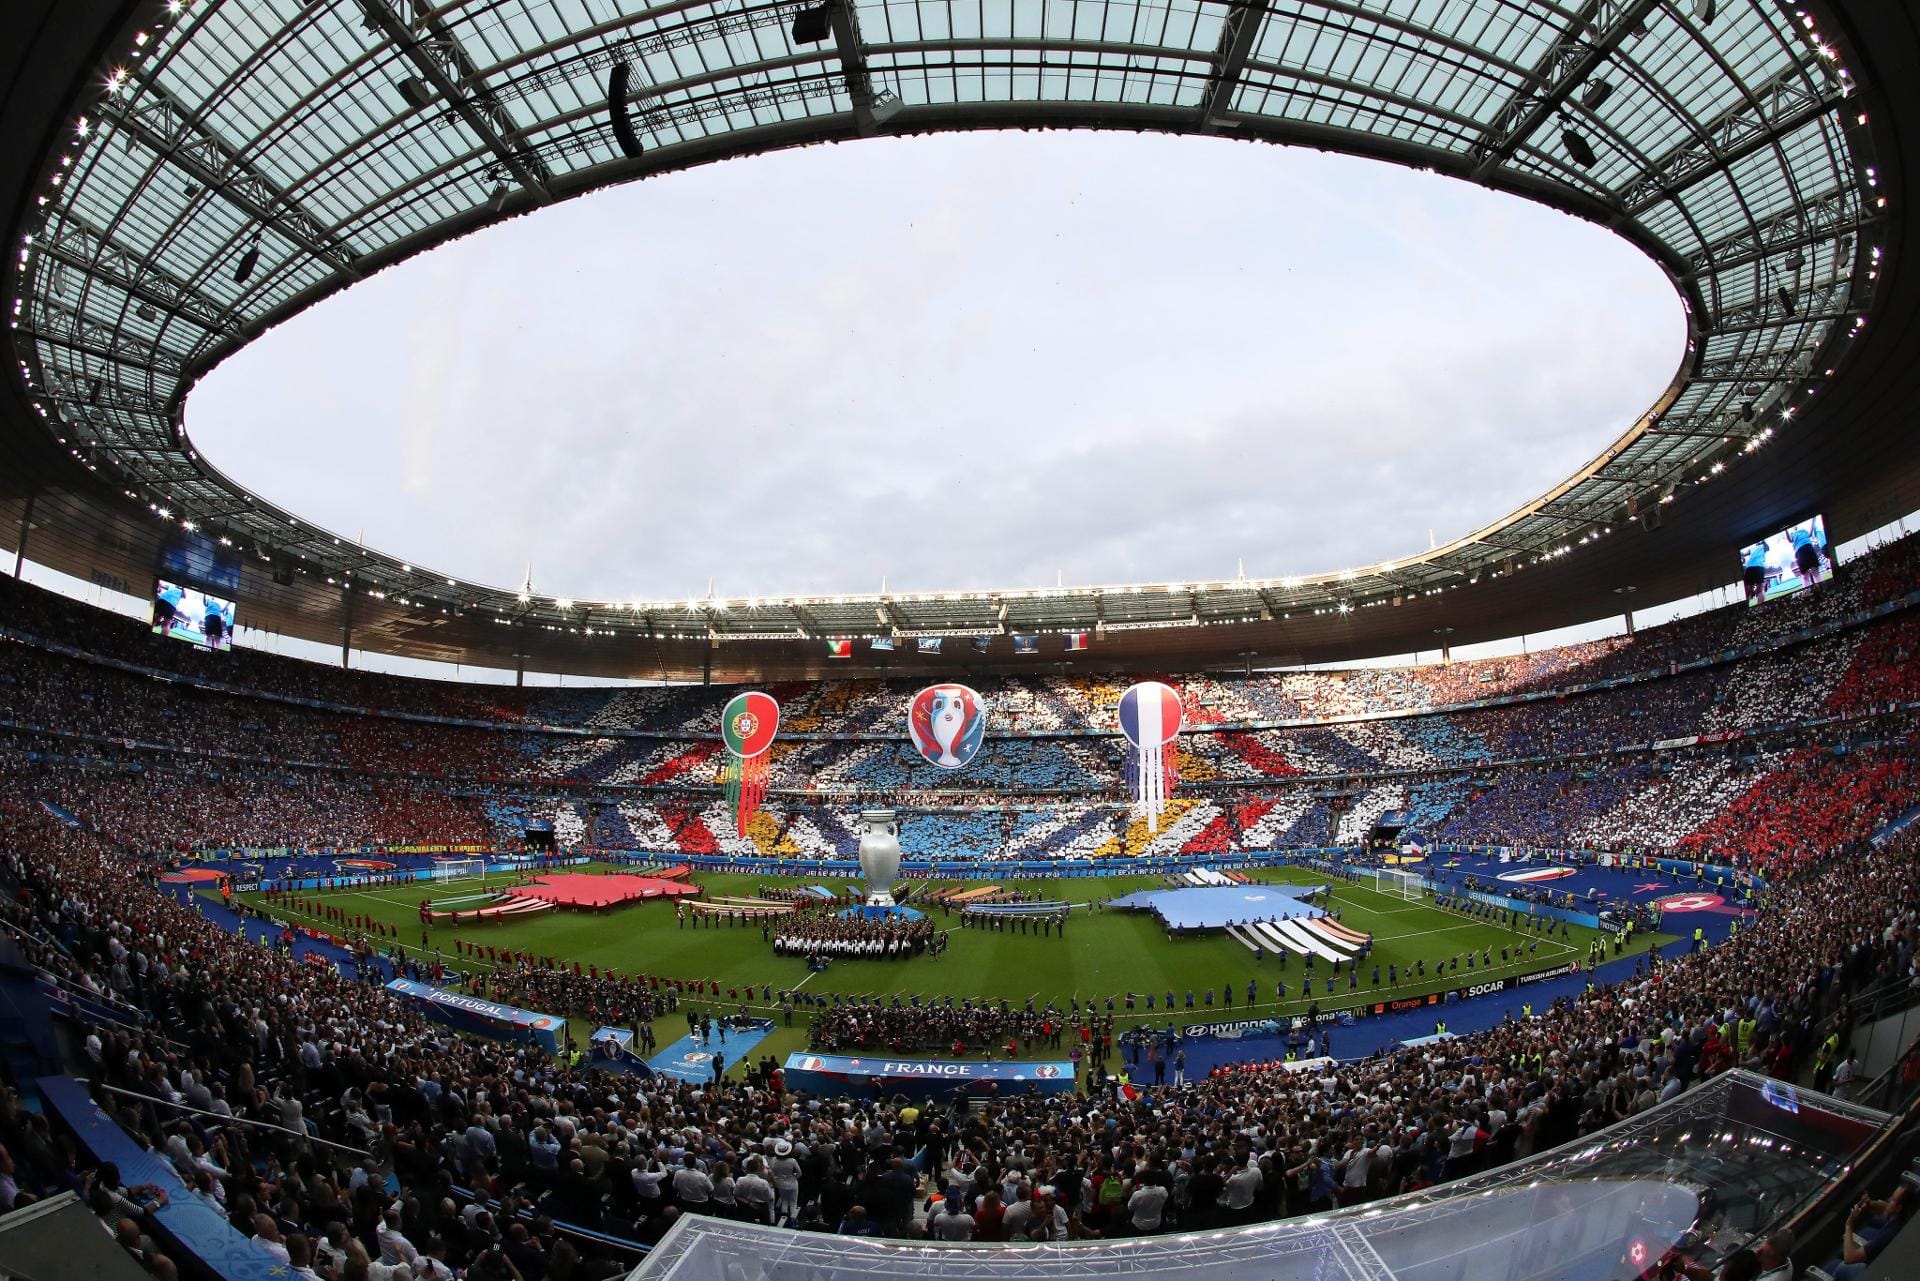 Es ist angerichtet: Das Stade de France in Saint-Denis ist auf den letzten Platz gefüllt, das EM-Finale zwischen Gastgeber Frankreich und Portugal lässt die Herzen höher schlagen.